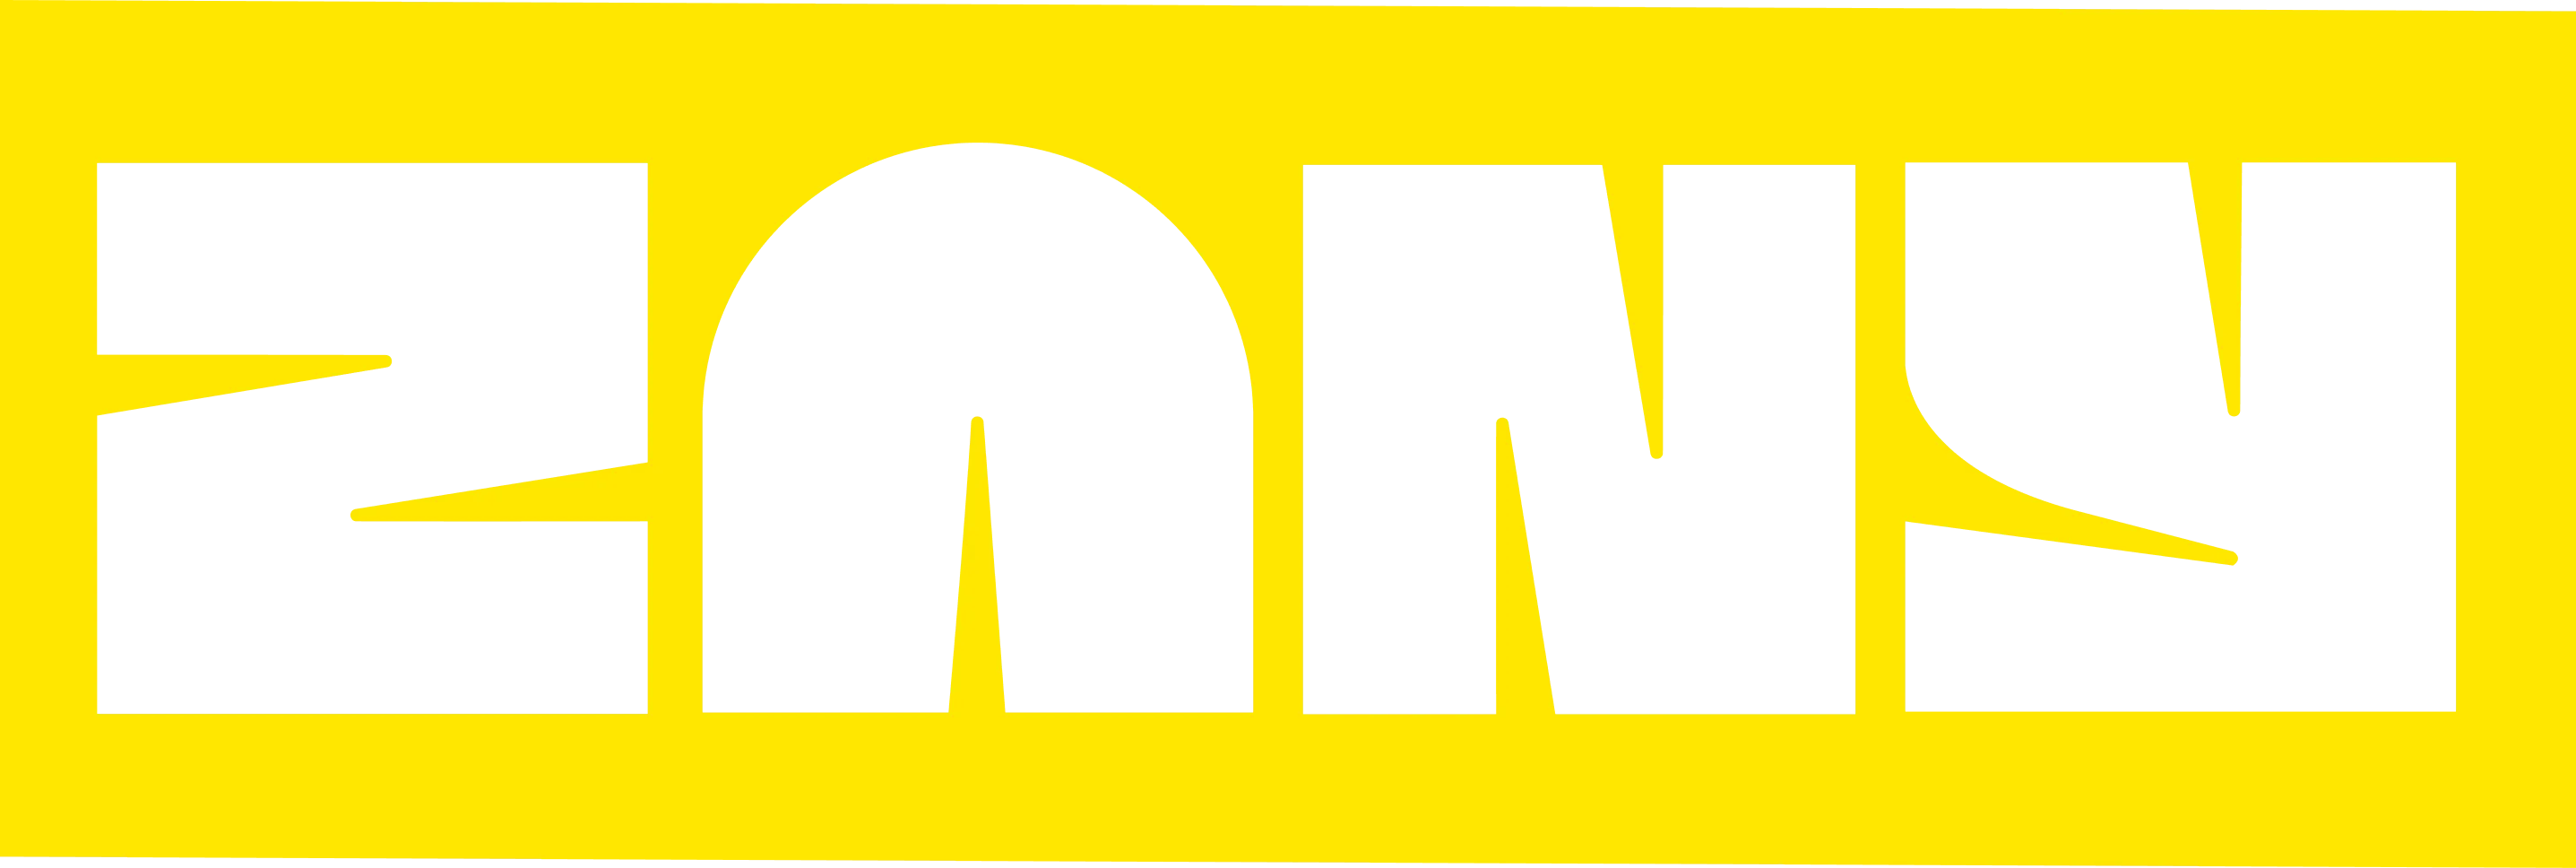 Zany dev logo